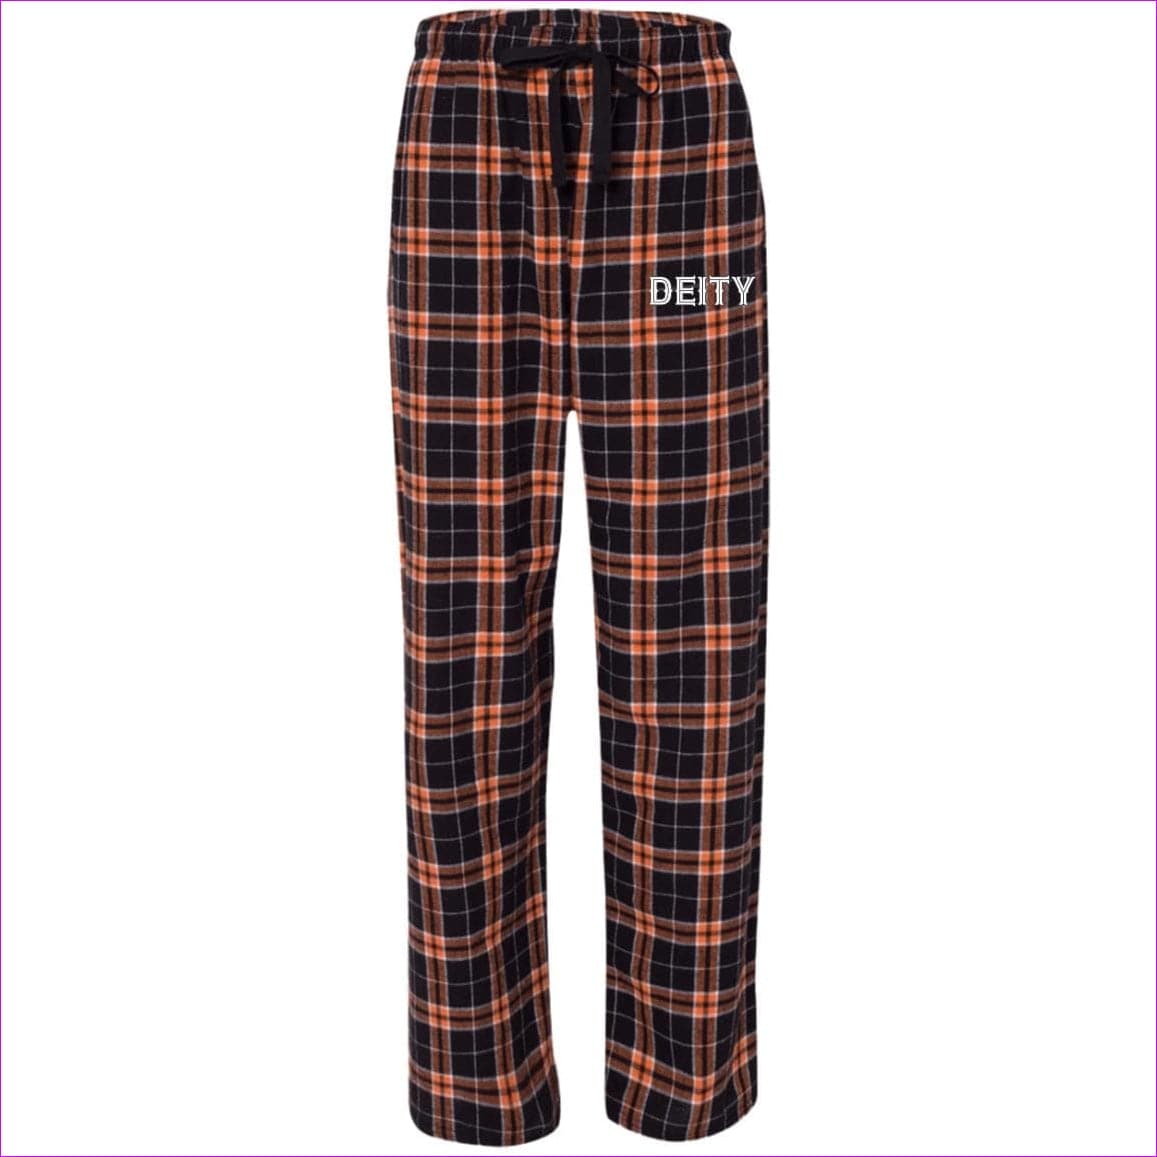 Orange/Black Deity Flannel Pants - unisex pajamas Pants at TFC&H Co.